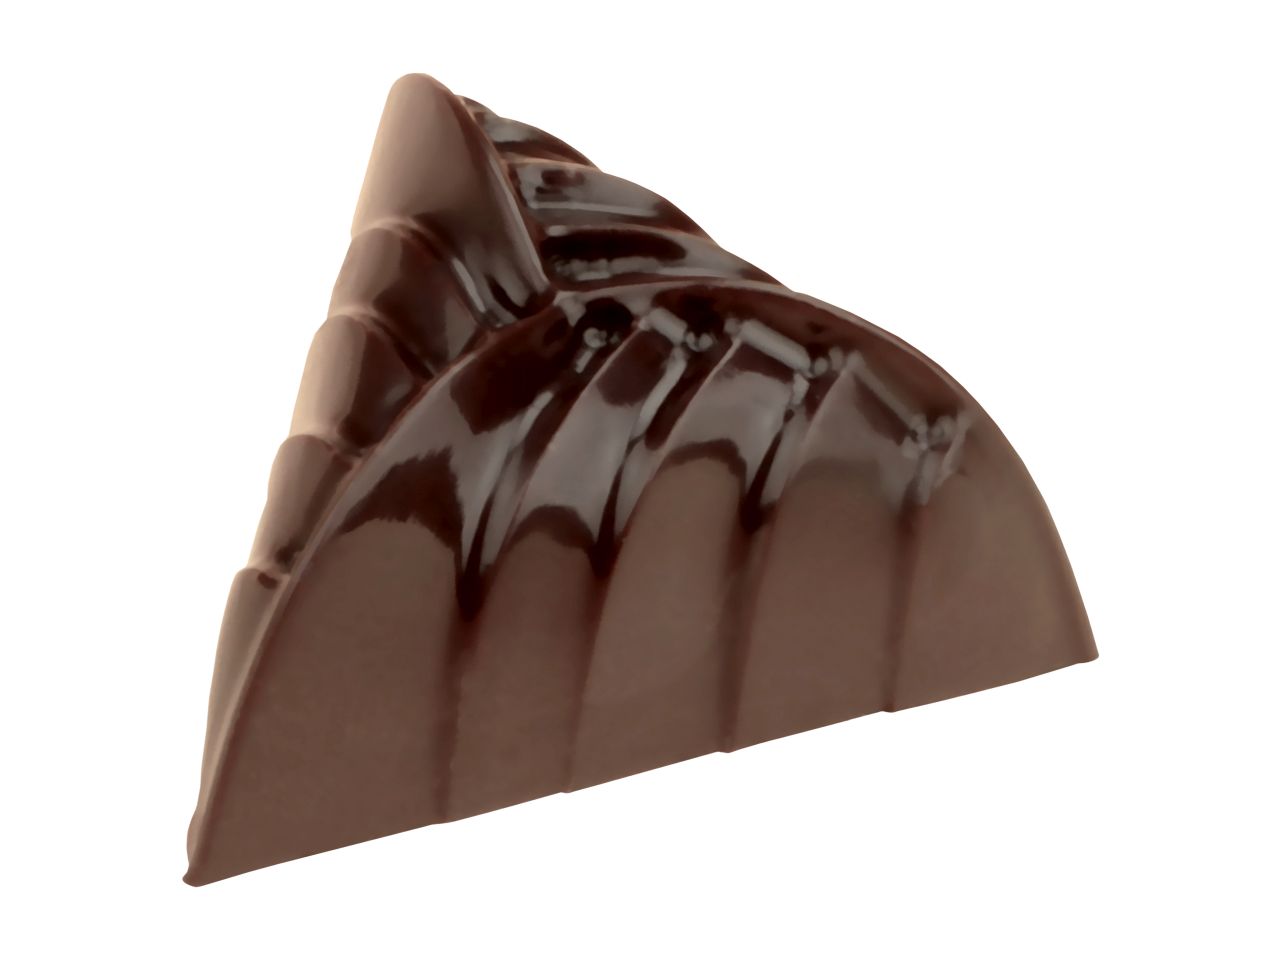 Schokoladenform: Elegance, Kunststoff, transparent, 18 Mulden à 34 x 20 mm